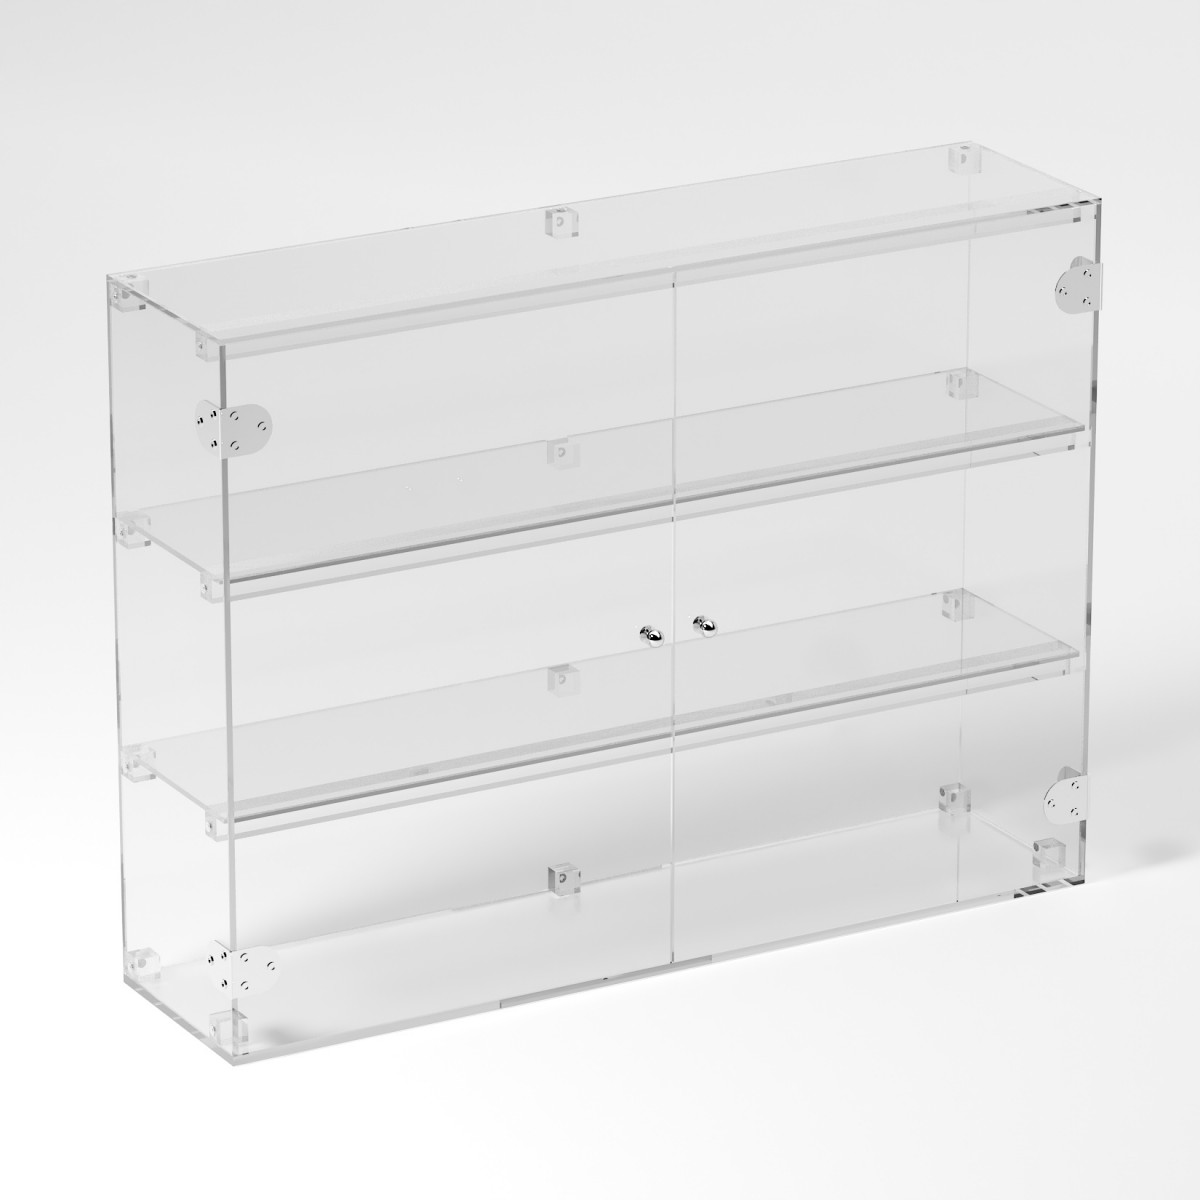 Ampia vetrina espositiva in plexiglass trasparente a 3 ripiani - Misure: 80 x 20 x h60 cm